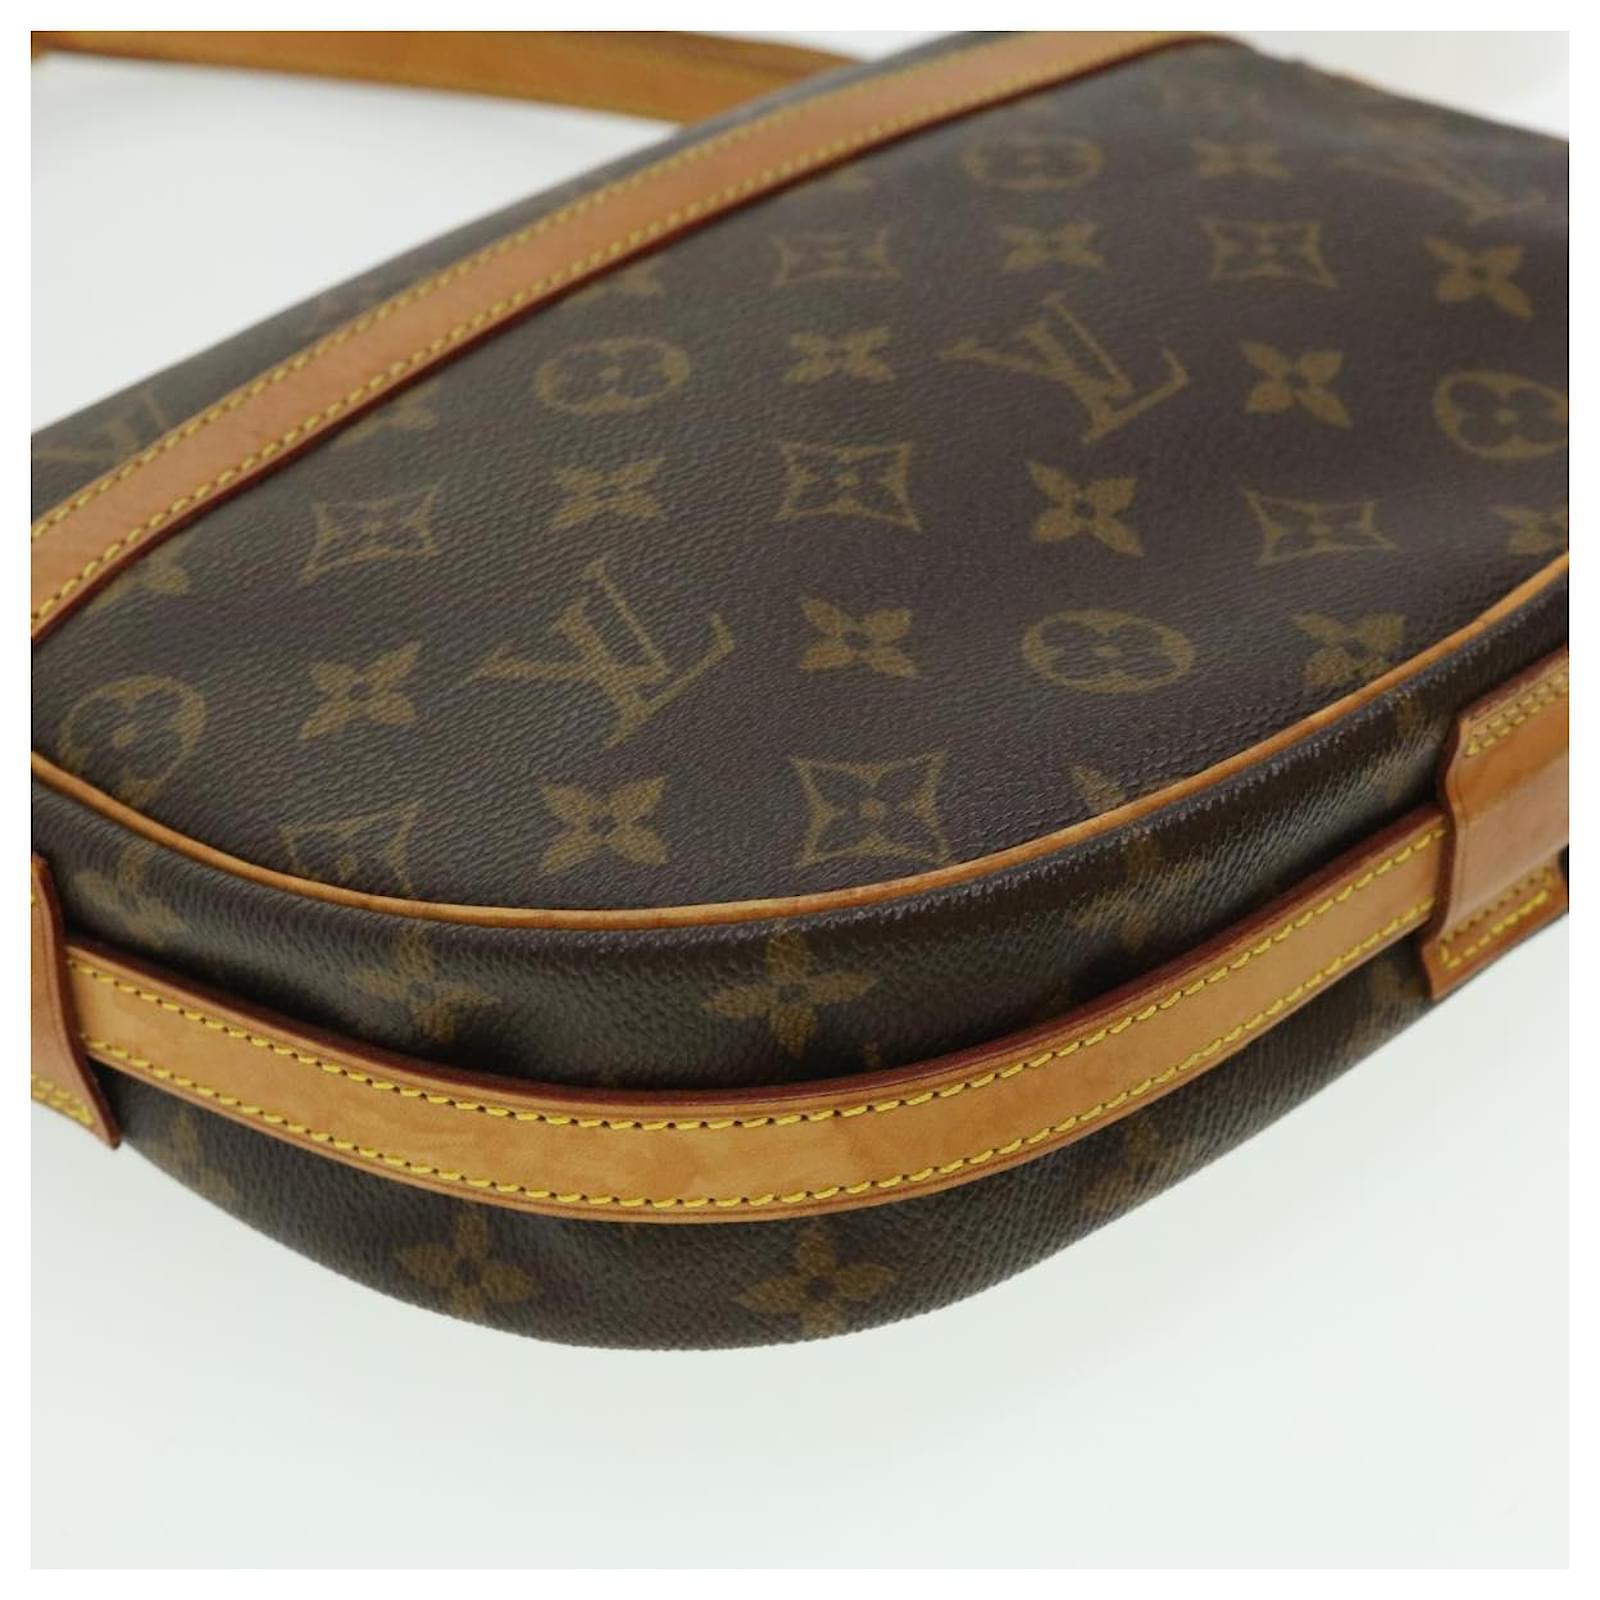 LOUIS VUITTON Jeune Fille MM Shoulder Bag Monogram Leather Brown M51226  67MT248